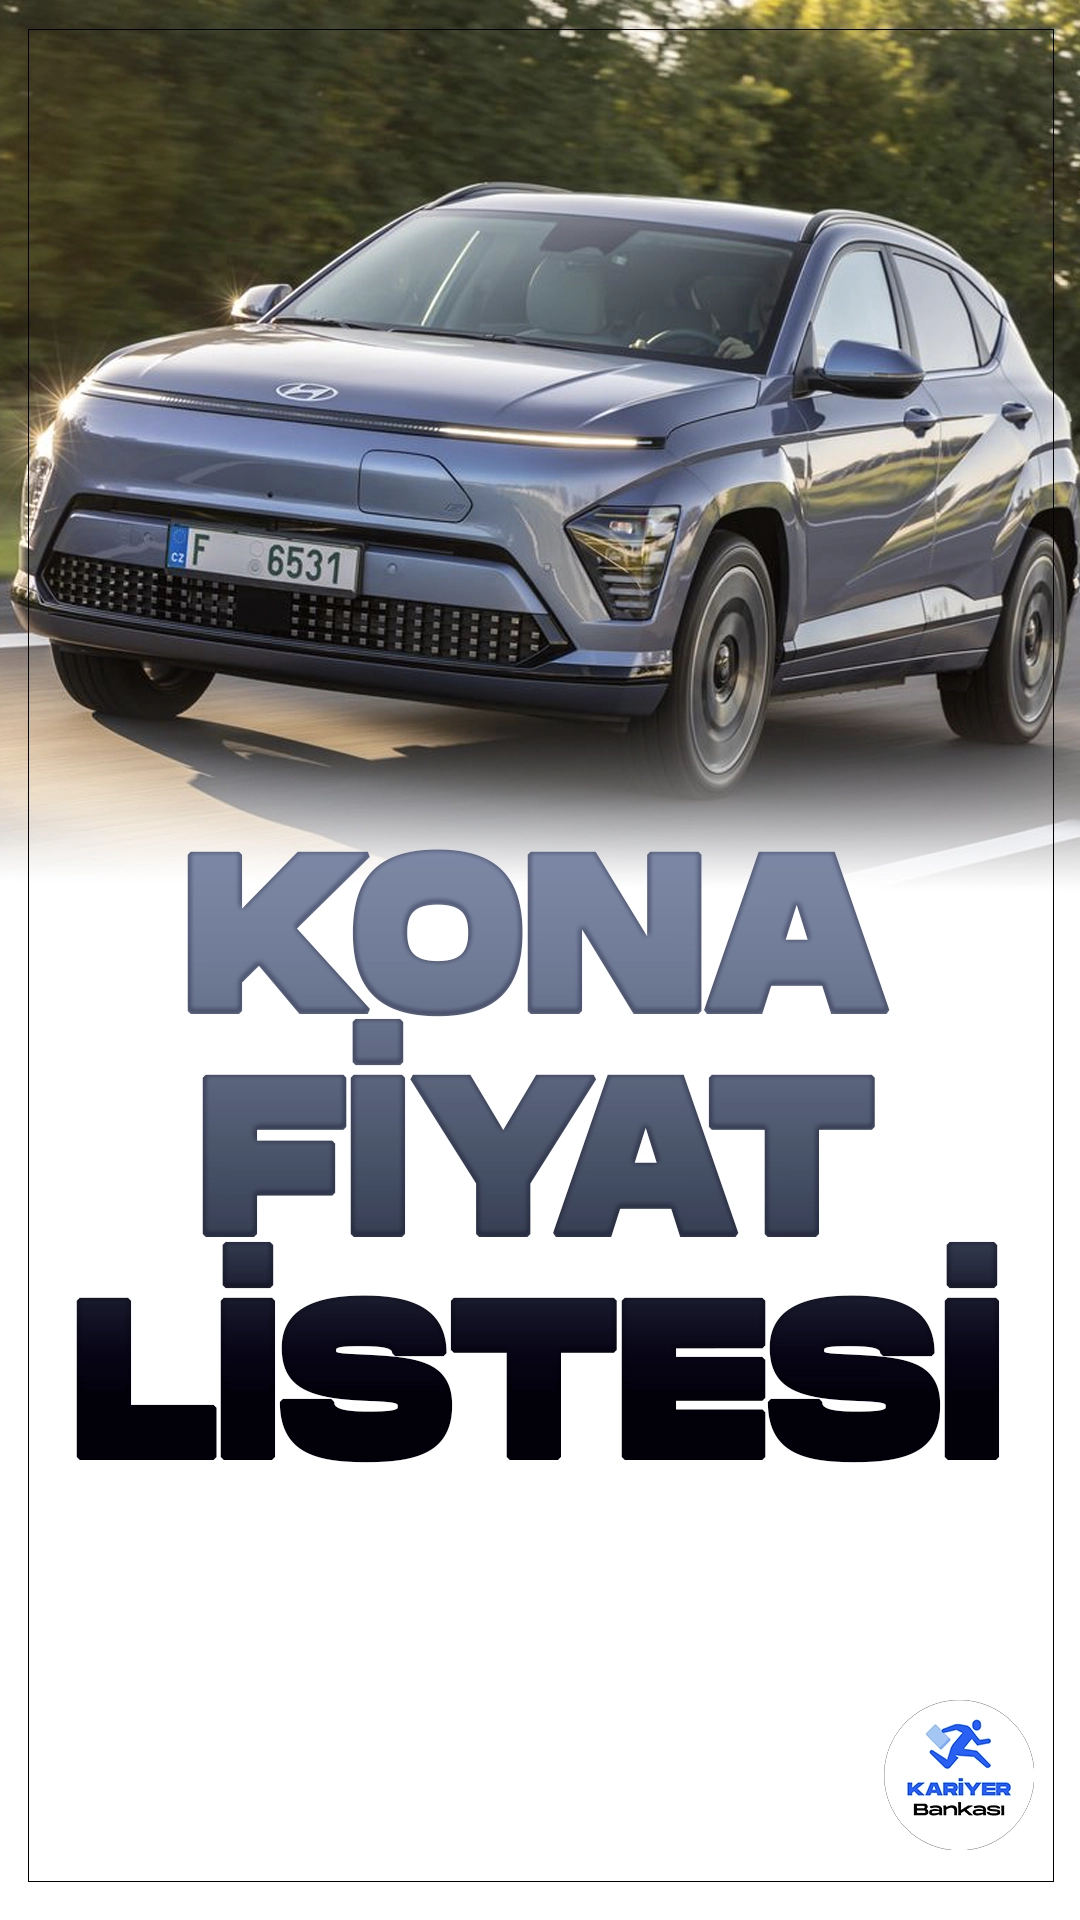 Hyundai Kona Nisan 2024 Fiyat Listesi Yayımlandı.Hyundai, kompakt SUV segmentinde iddialı bir isim olan Kona'nın yeni versiyonunu tanıttı. Yenilenen Kona, şık tasarımıyla dikkat çekerken, teknolojik özellikleri ve performansıyla da öne çıkıyor.